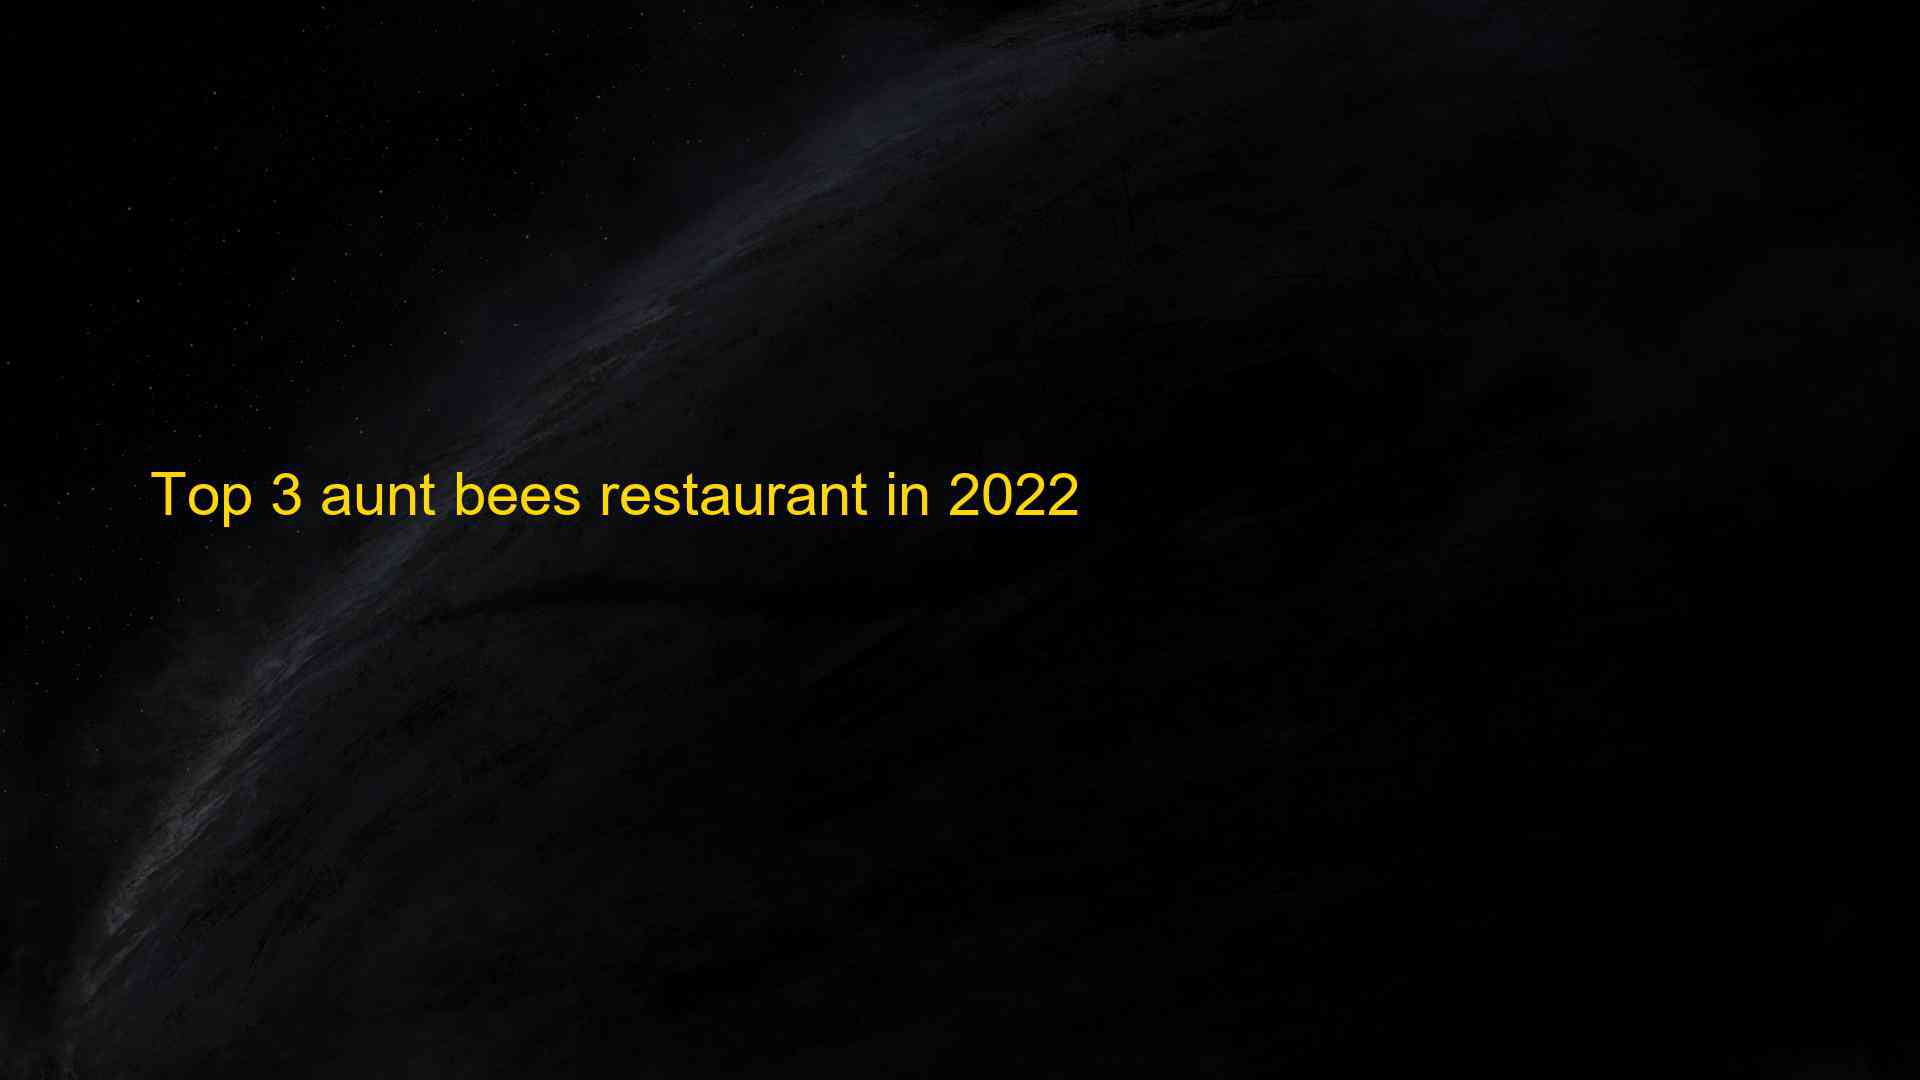 Top 3 aunt bees restaurant in 2022 1663178767